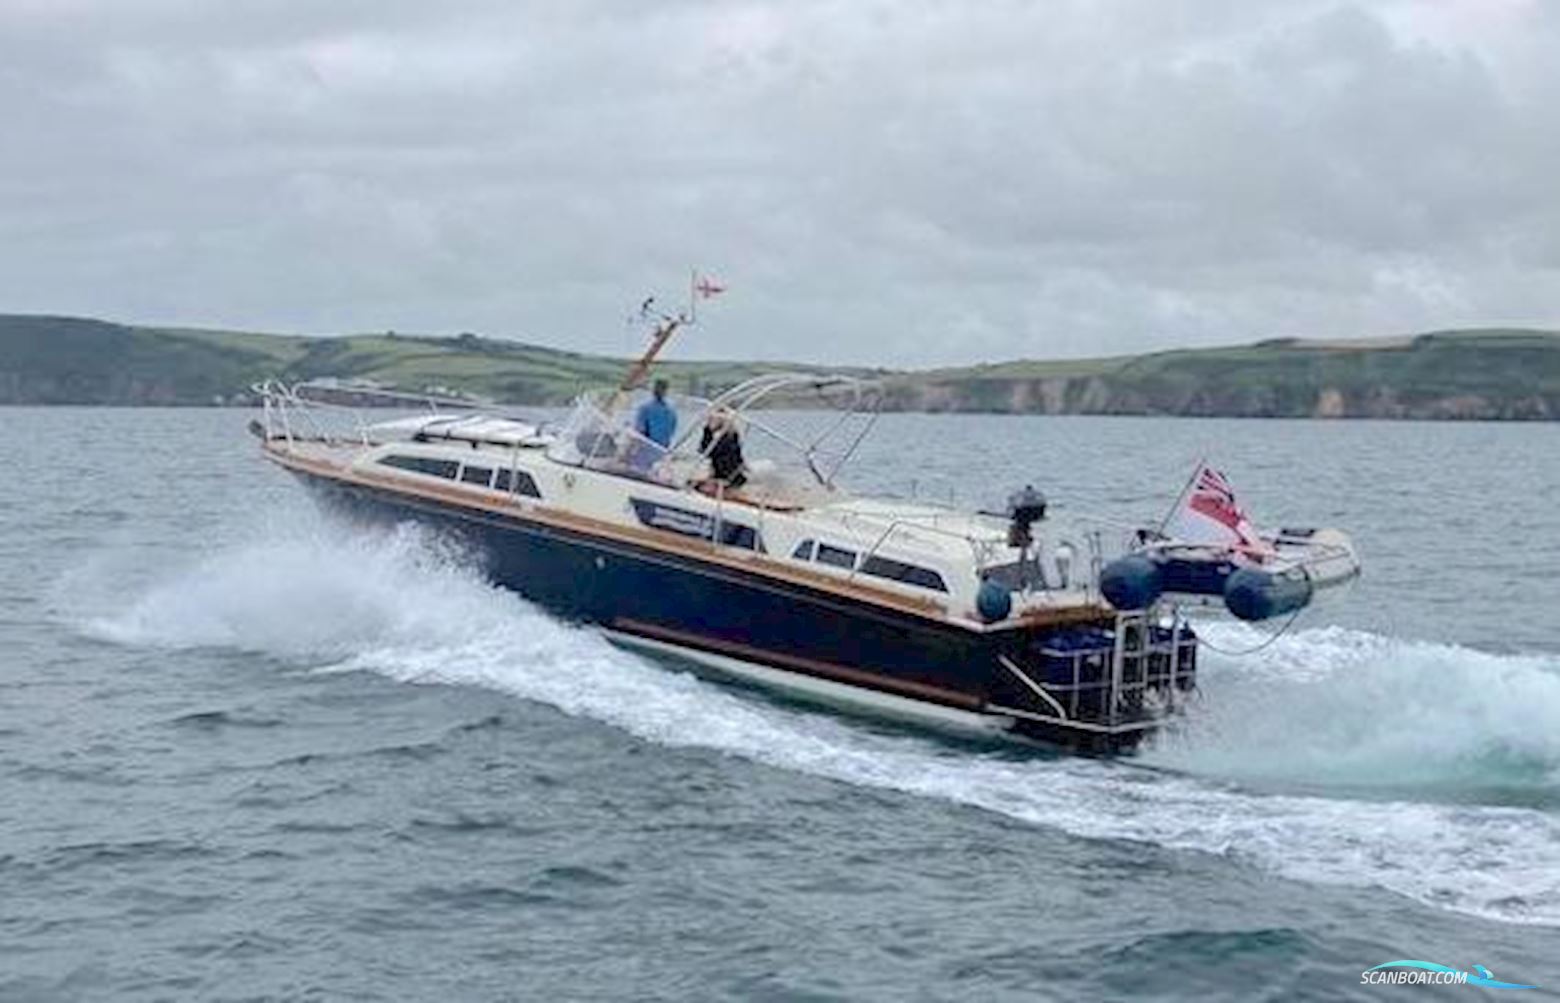 Swordsman 40 Motorbåt 2004, med Cummins motor, England